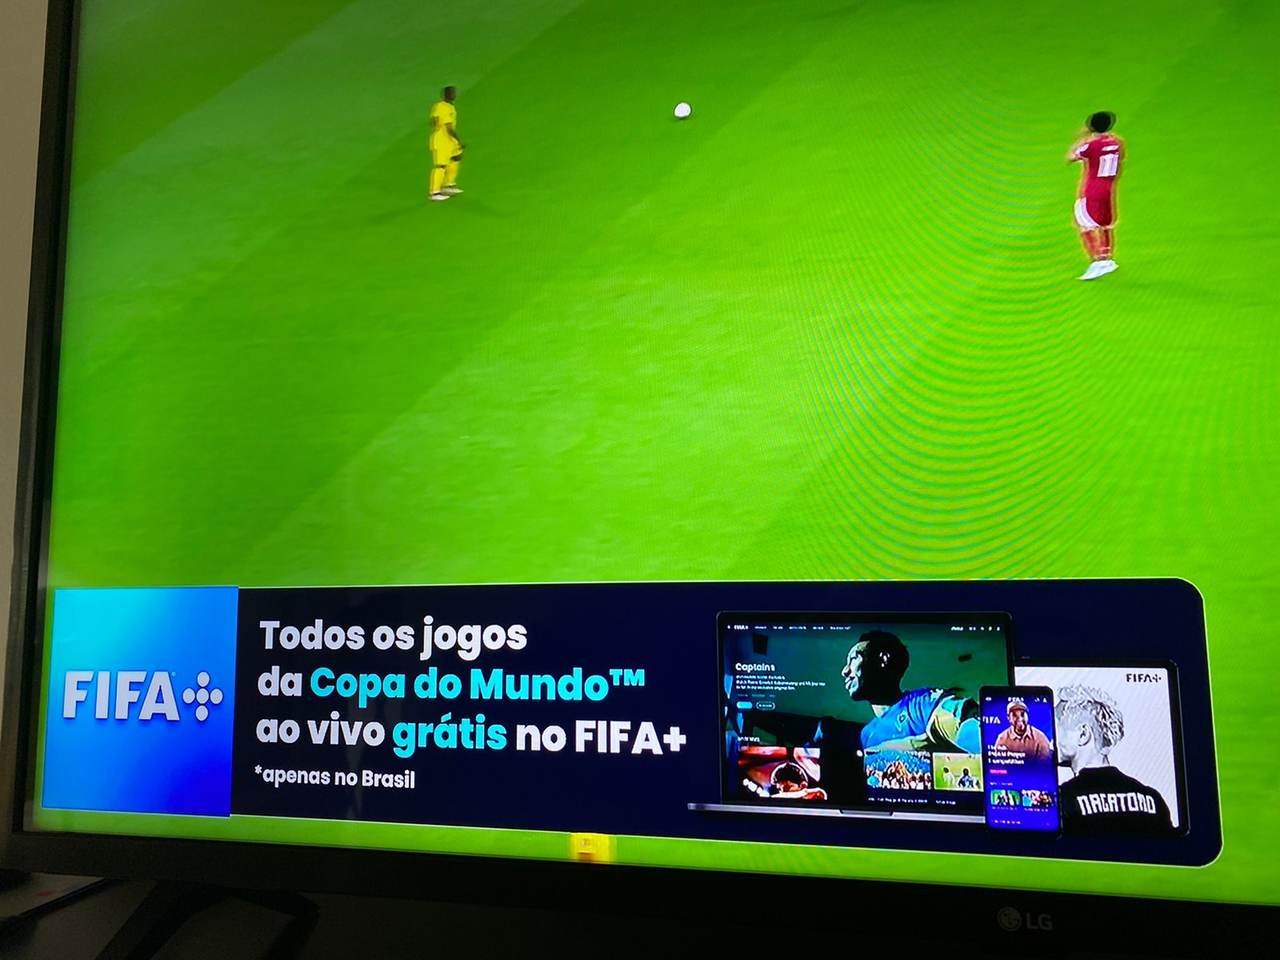 FIFA une Casimiro e Ronaldo na Copa do Mundo para promover plataforma FIFA+  - MKT Esportivo